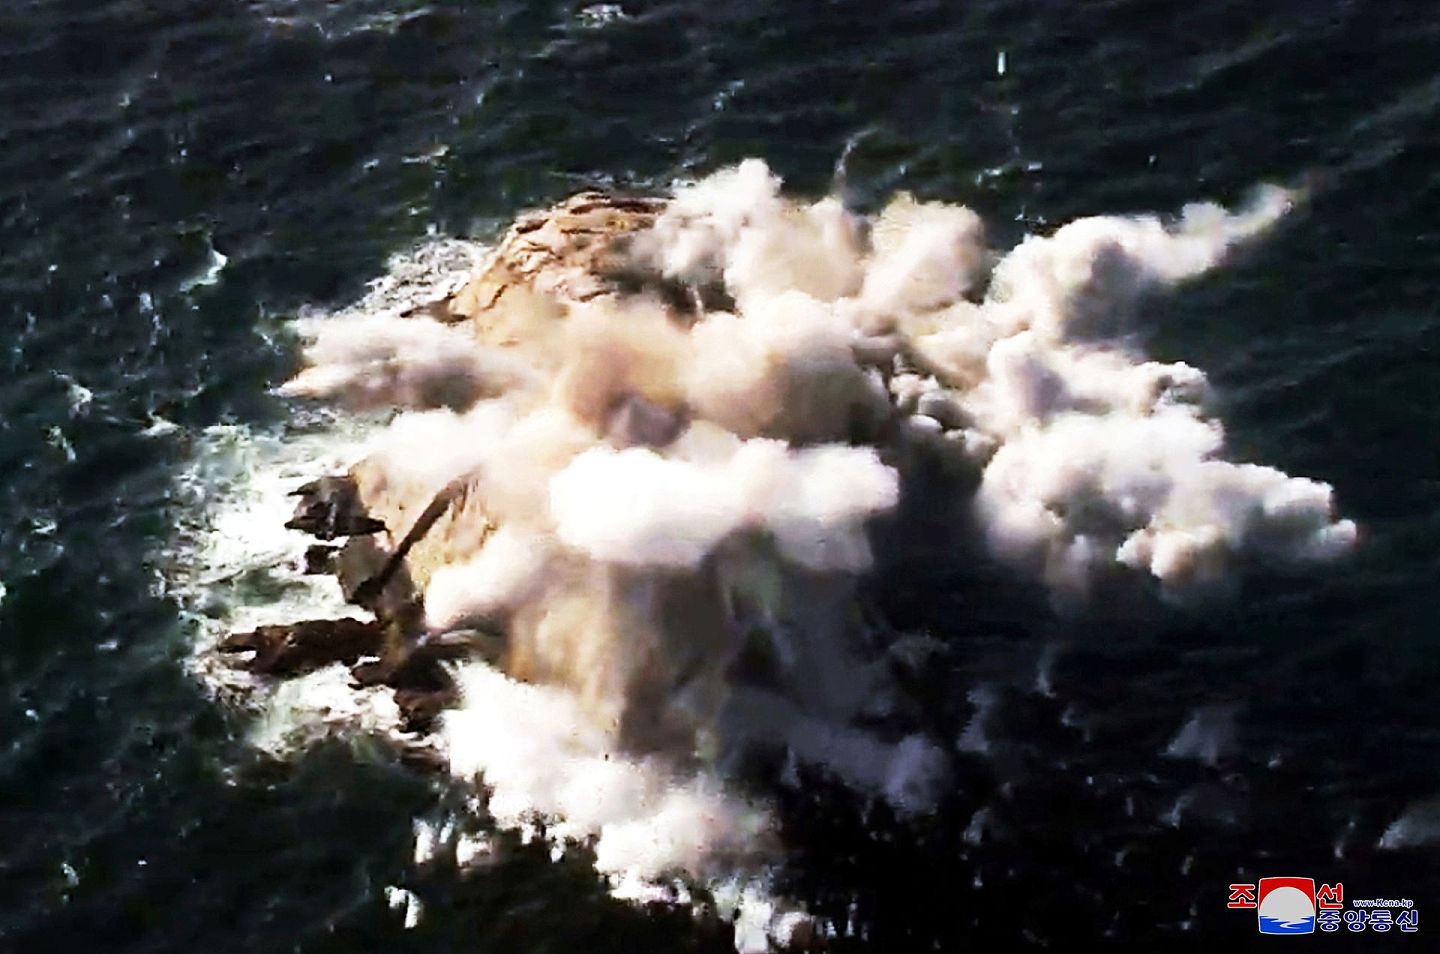 朝鲜中央通讯社(KCNA)于2020年3月2日发布的图片显示，朝鲜领导人金正恩视察朝鲜人民军远端炮兵分队演习时，一枚导弹在水中爆炸。（Reuters）